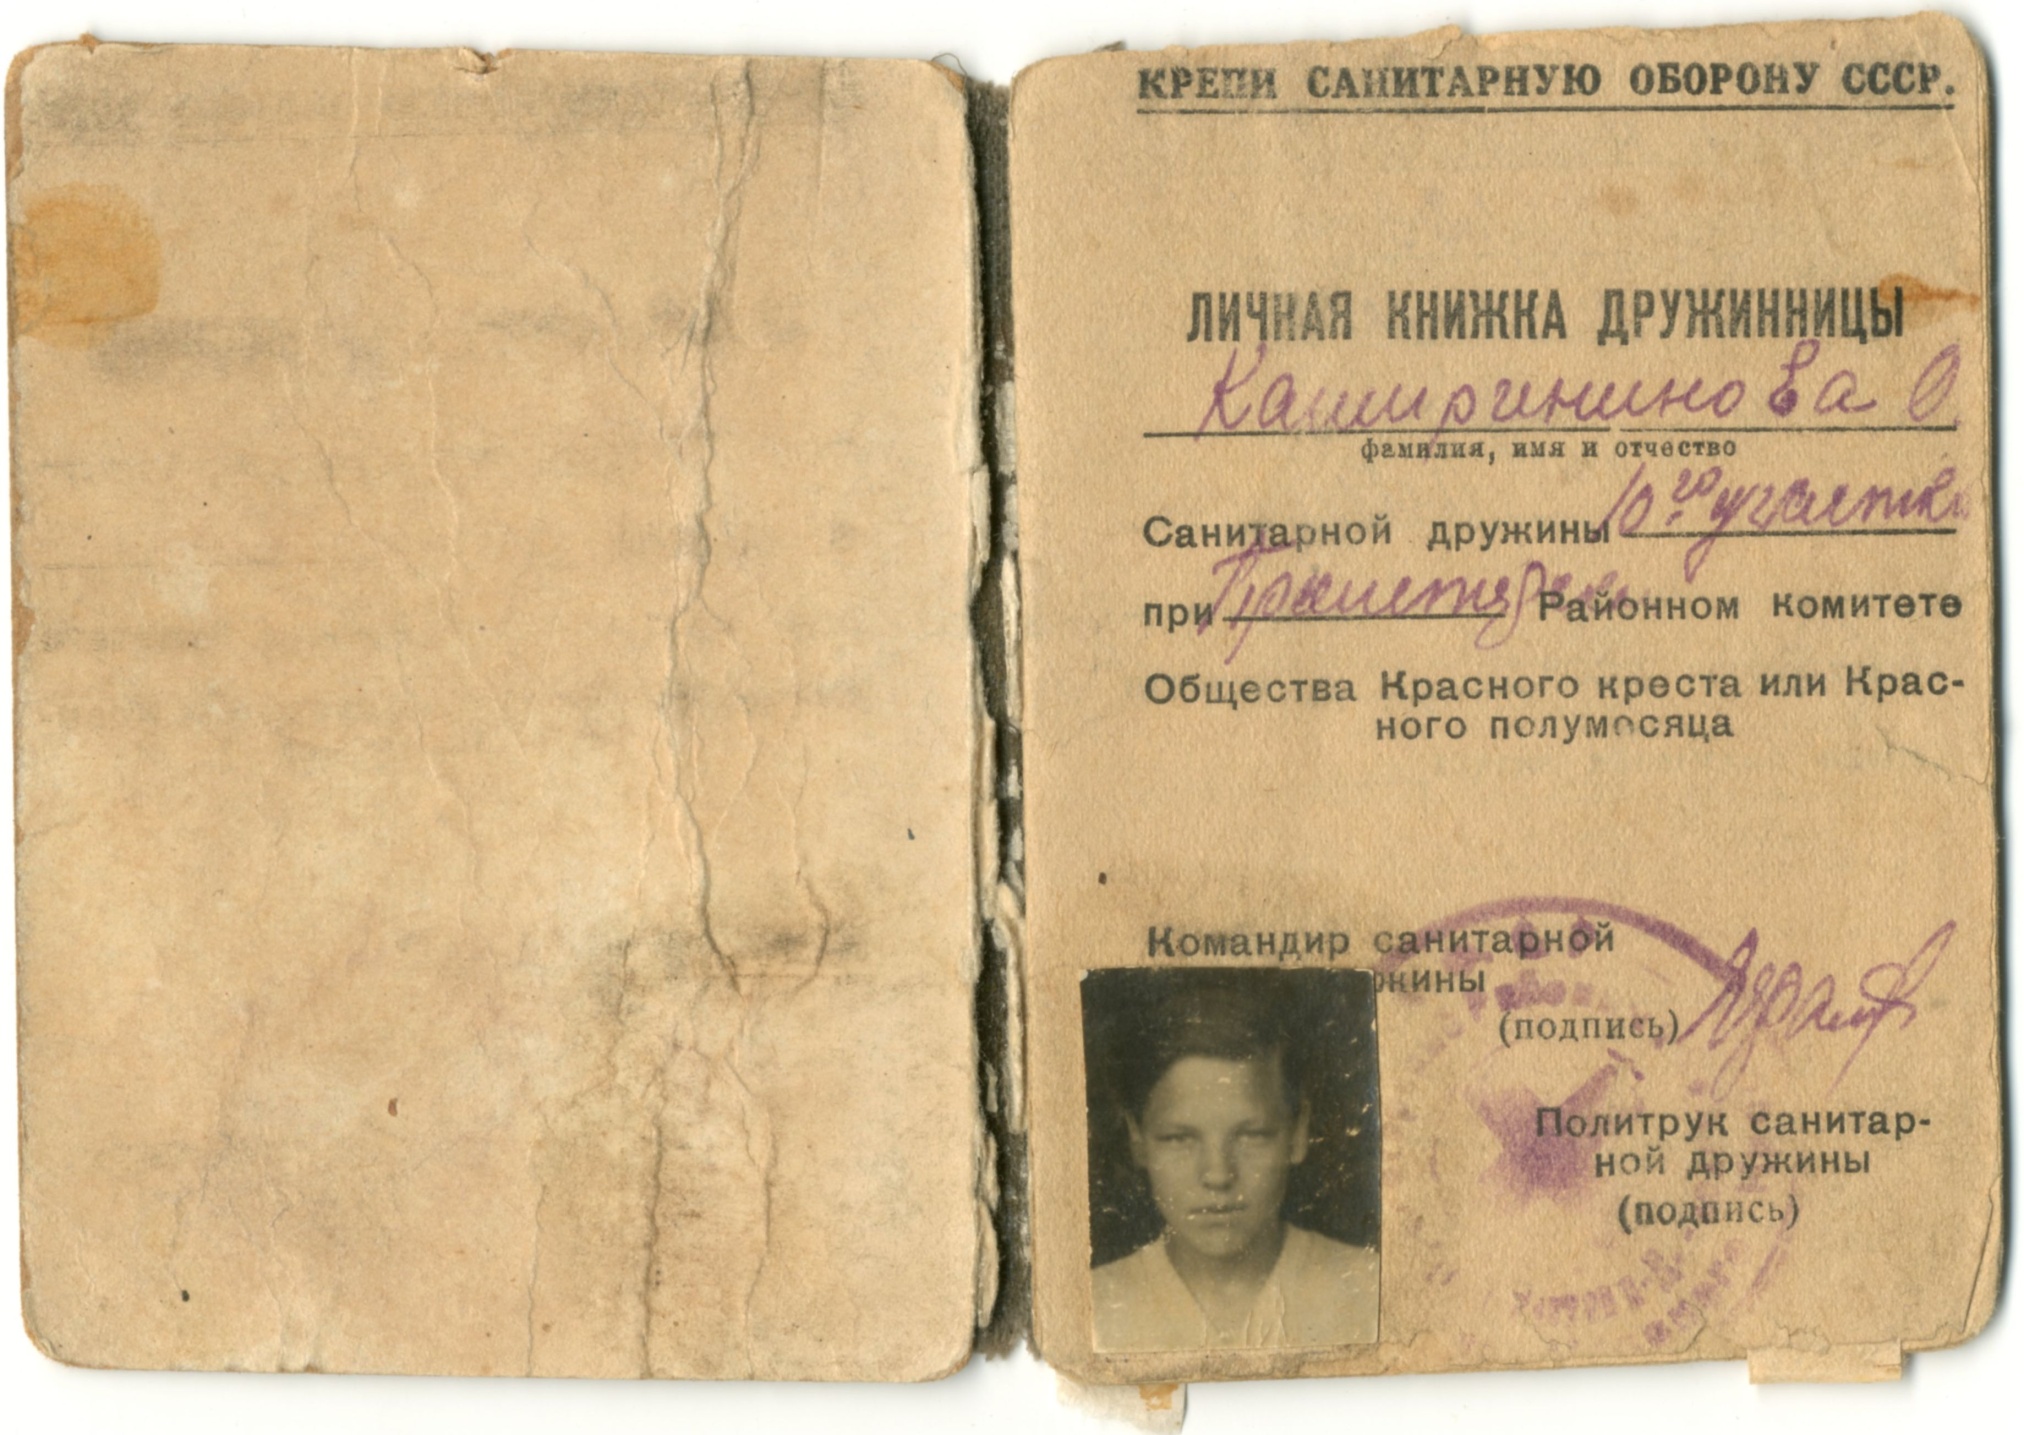 Личная книжка дружинницы Кашириновой Ольги. 22 июня 1941 года.